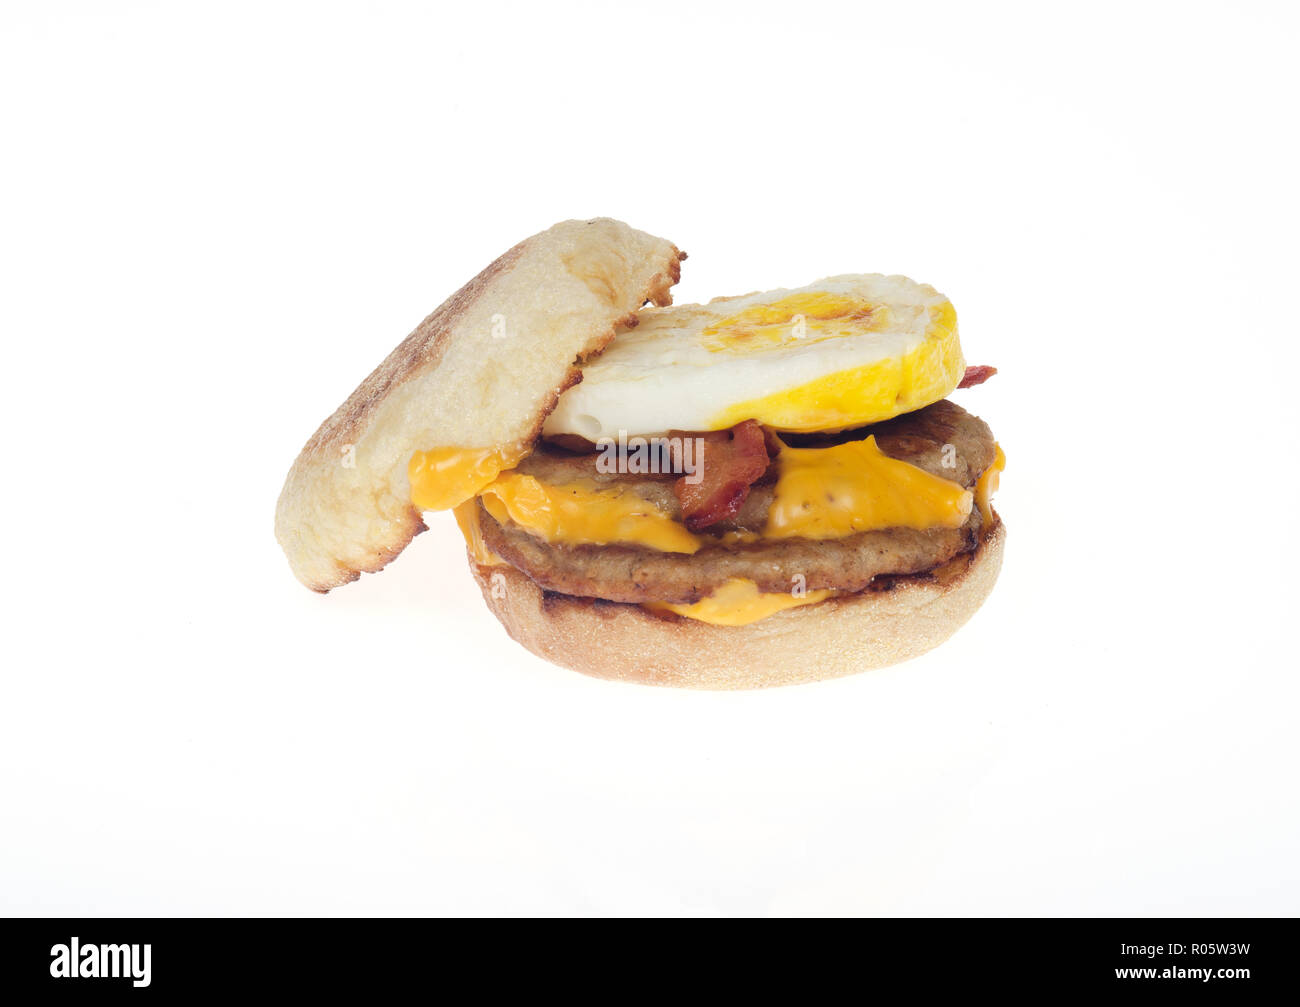 Pile de McDonald's sandwich Œuf McMuffin breakfast 2 galettes saucisses, 2 tranches de bacon, 2 tranches de fromage américain sur muffin anglais. Le 1 novembre, 2018 Banque D'Images